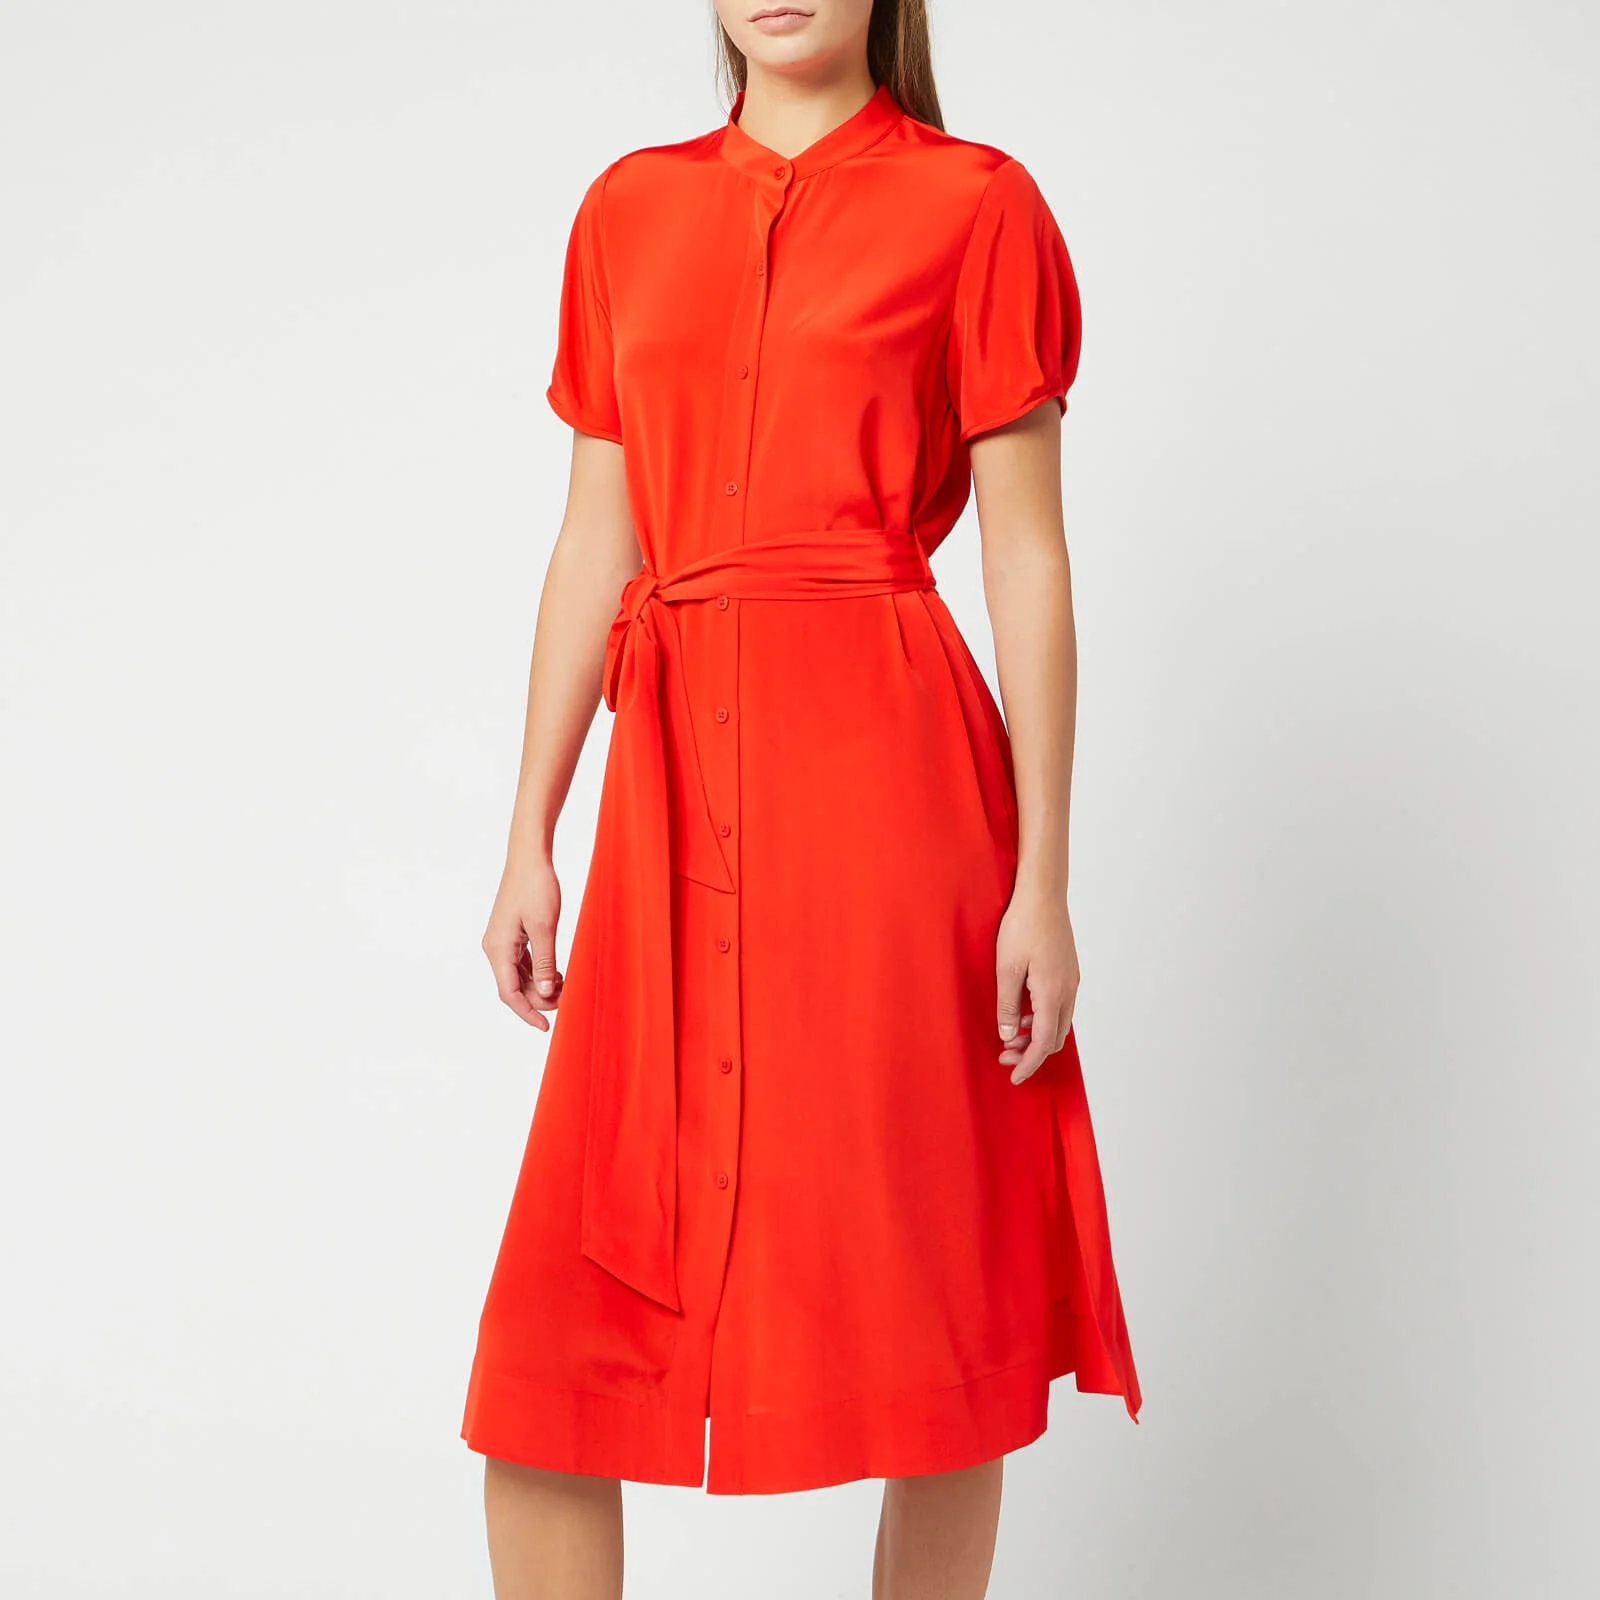 Diane von Furstenberg Women's Addilyn Shirt Dress - Red Image 1